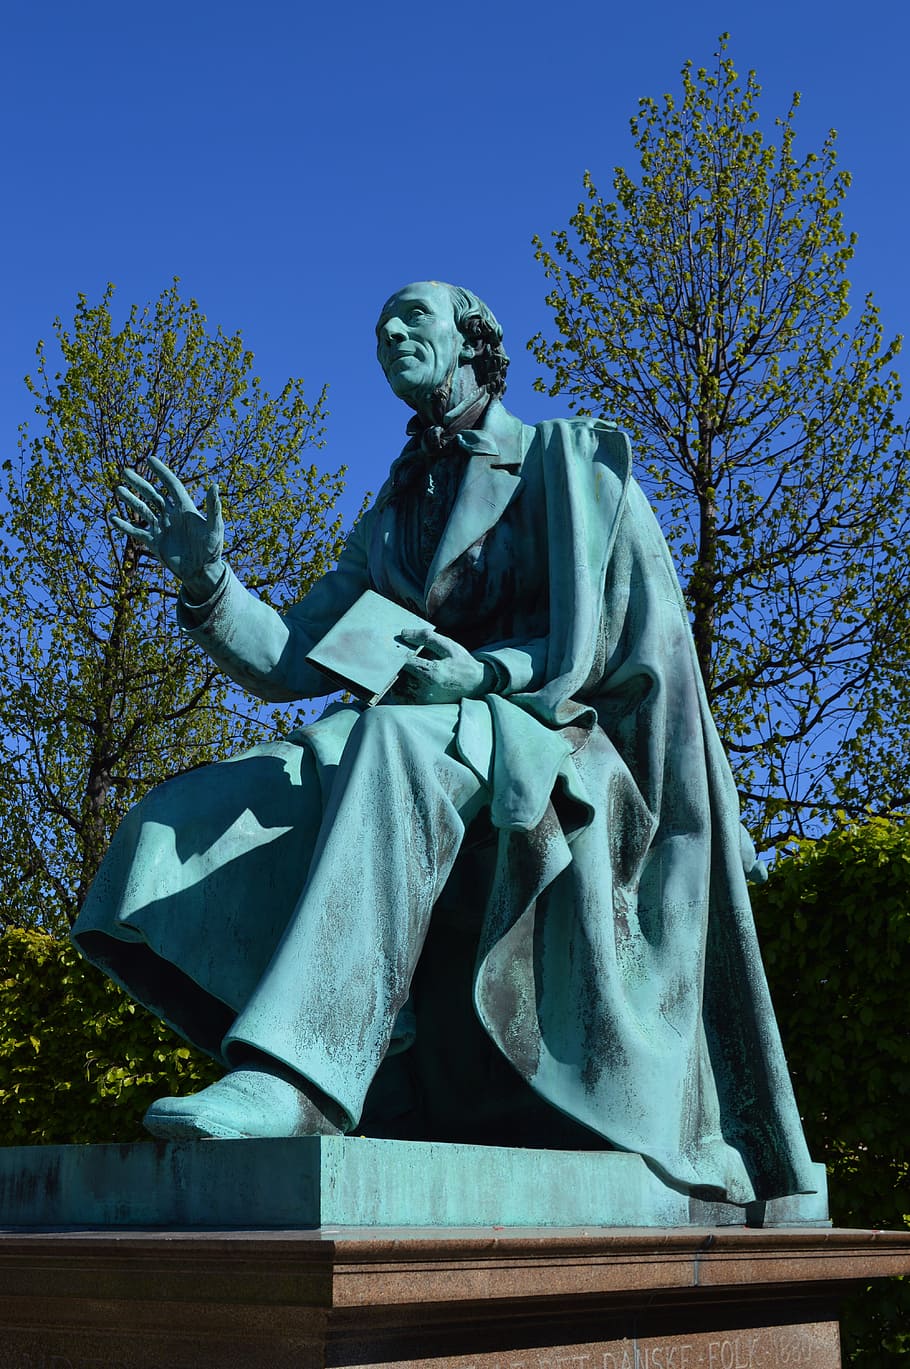 Hans Christian Andersen, rosenborg castle gardens, statue, august saabye